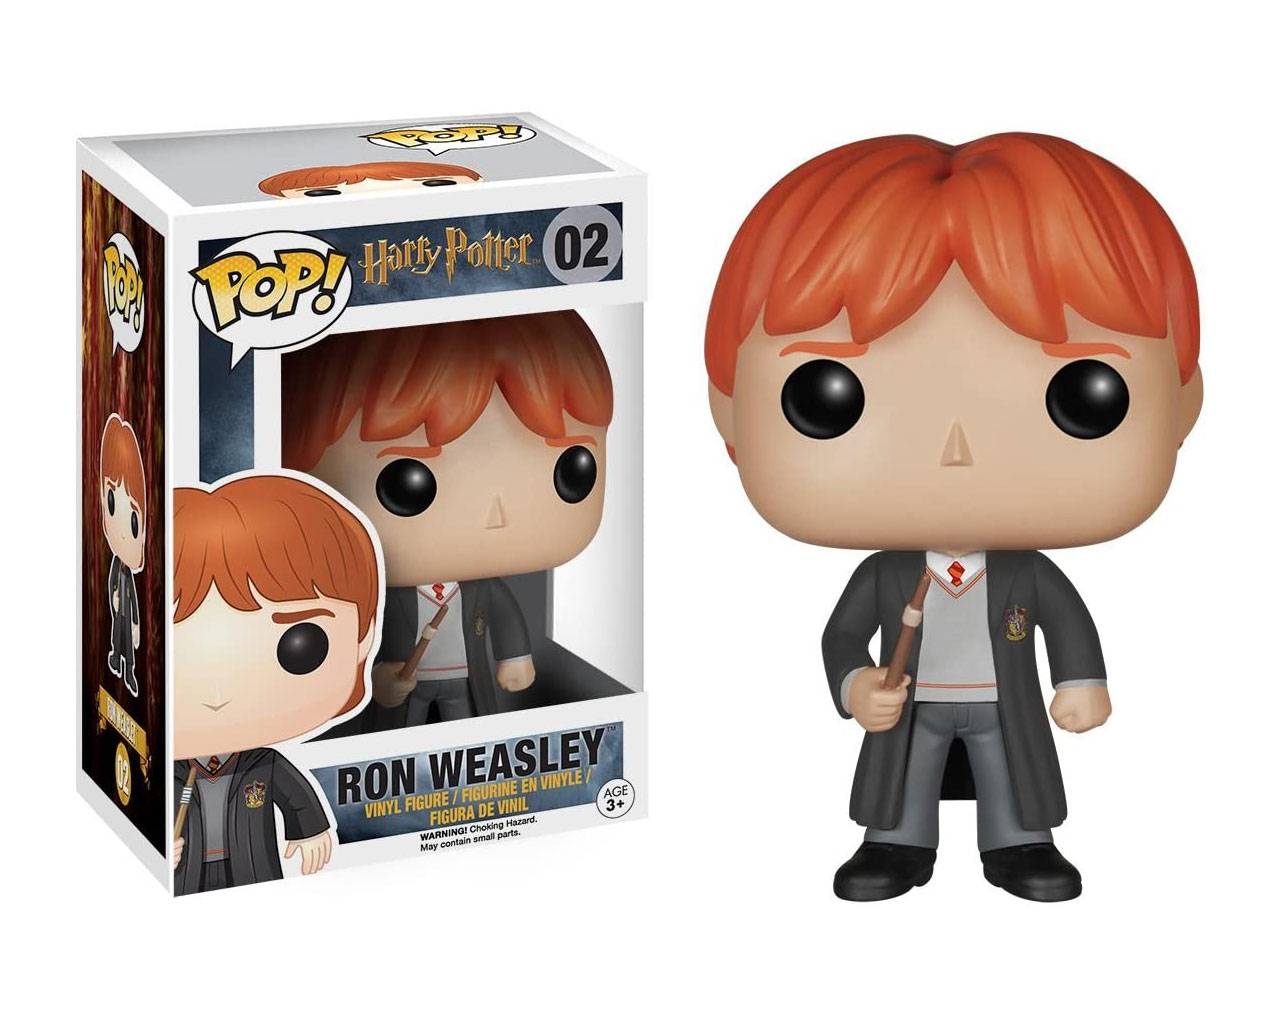 Ron Weasley (First Edition) Pop! Vinyl